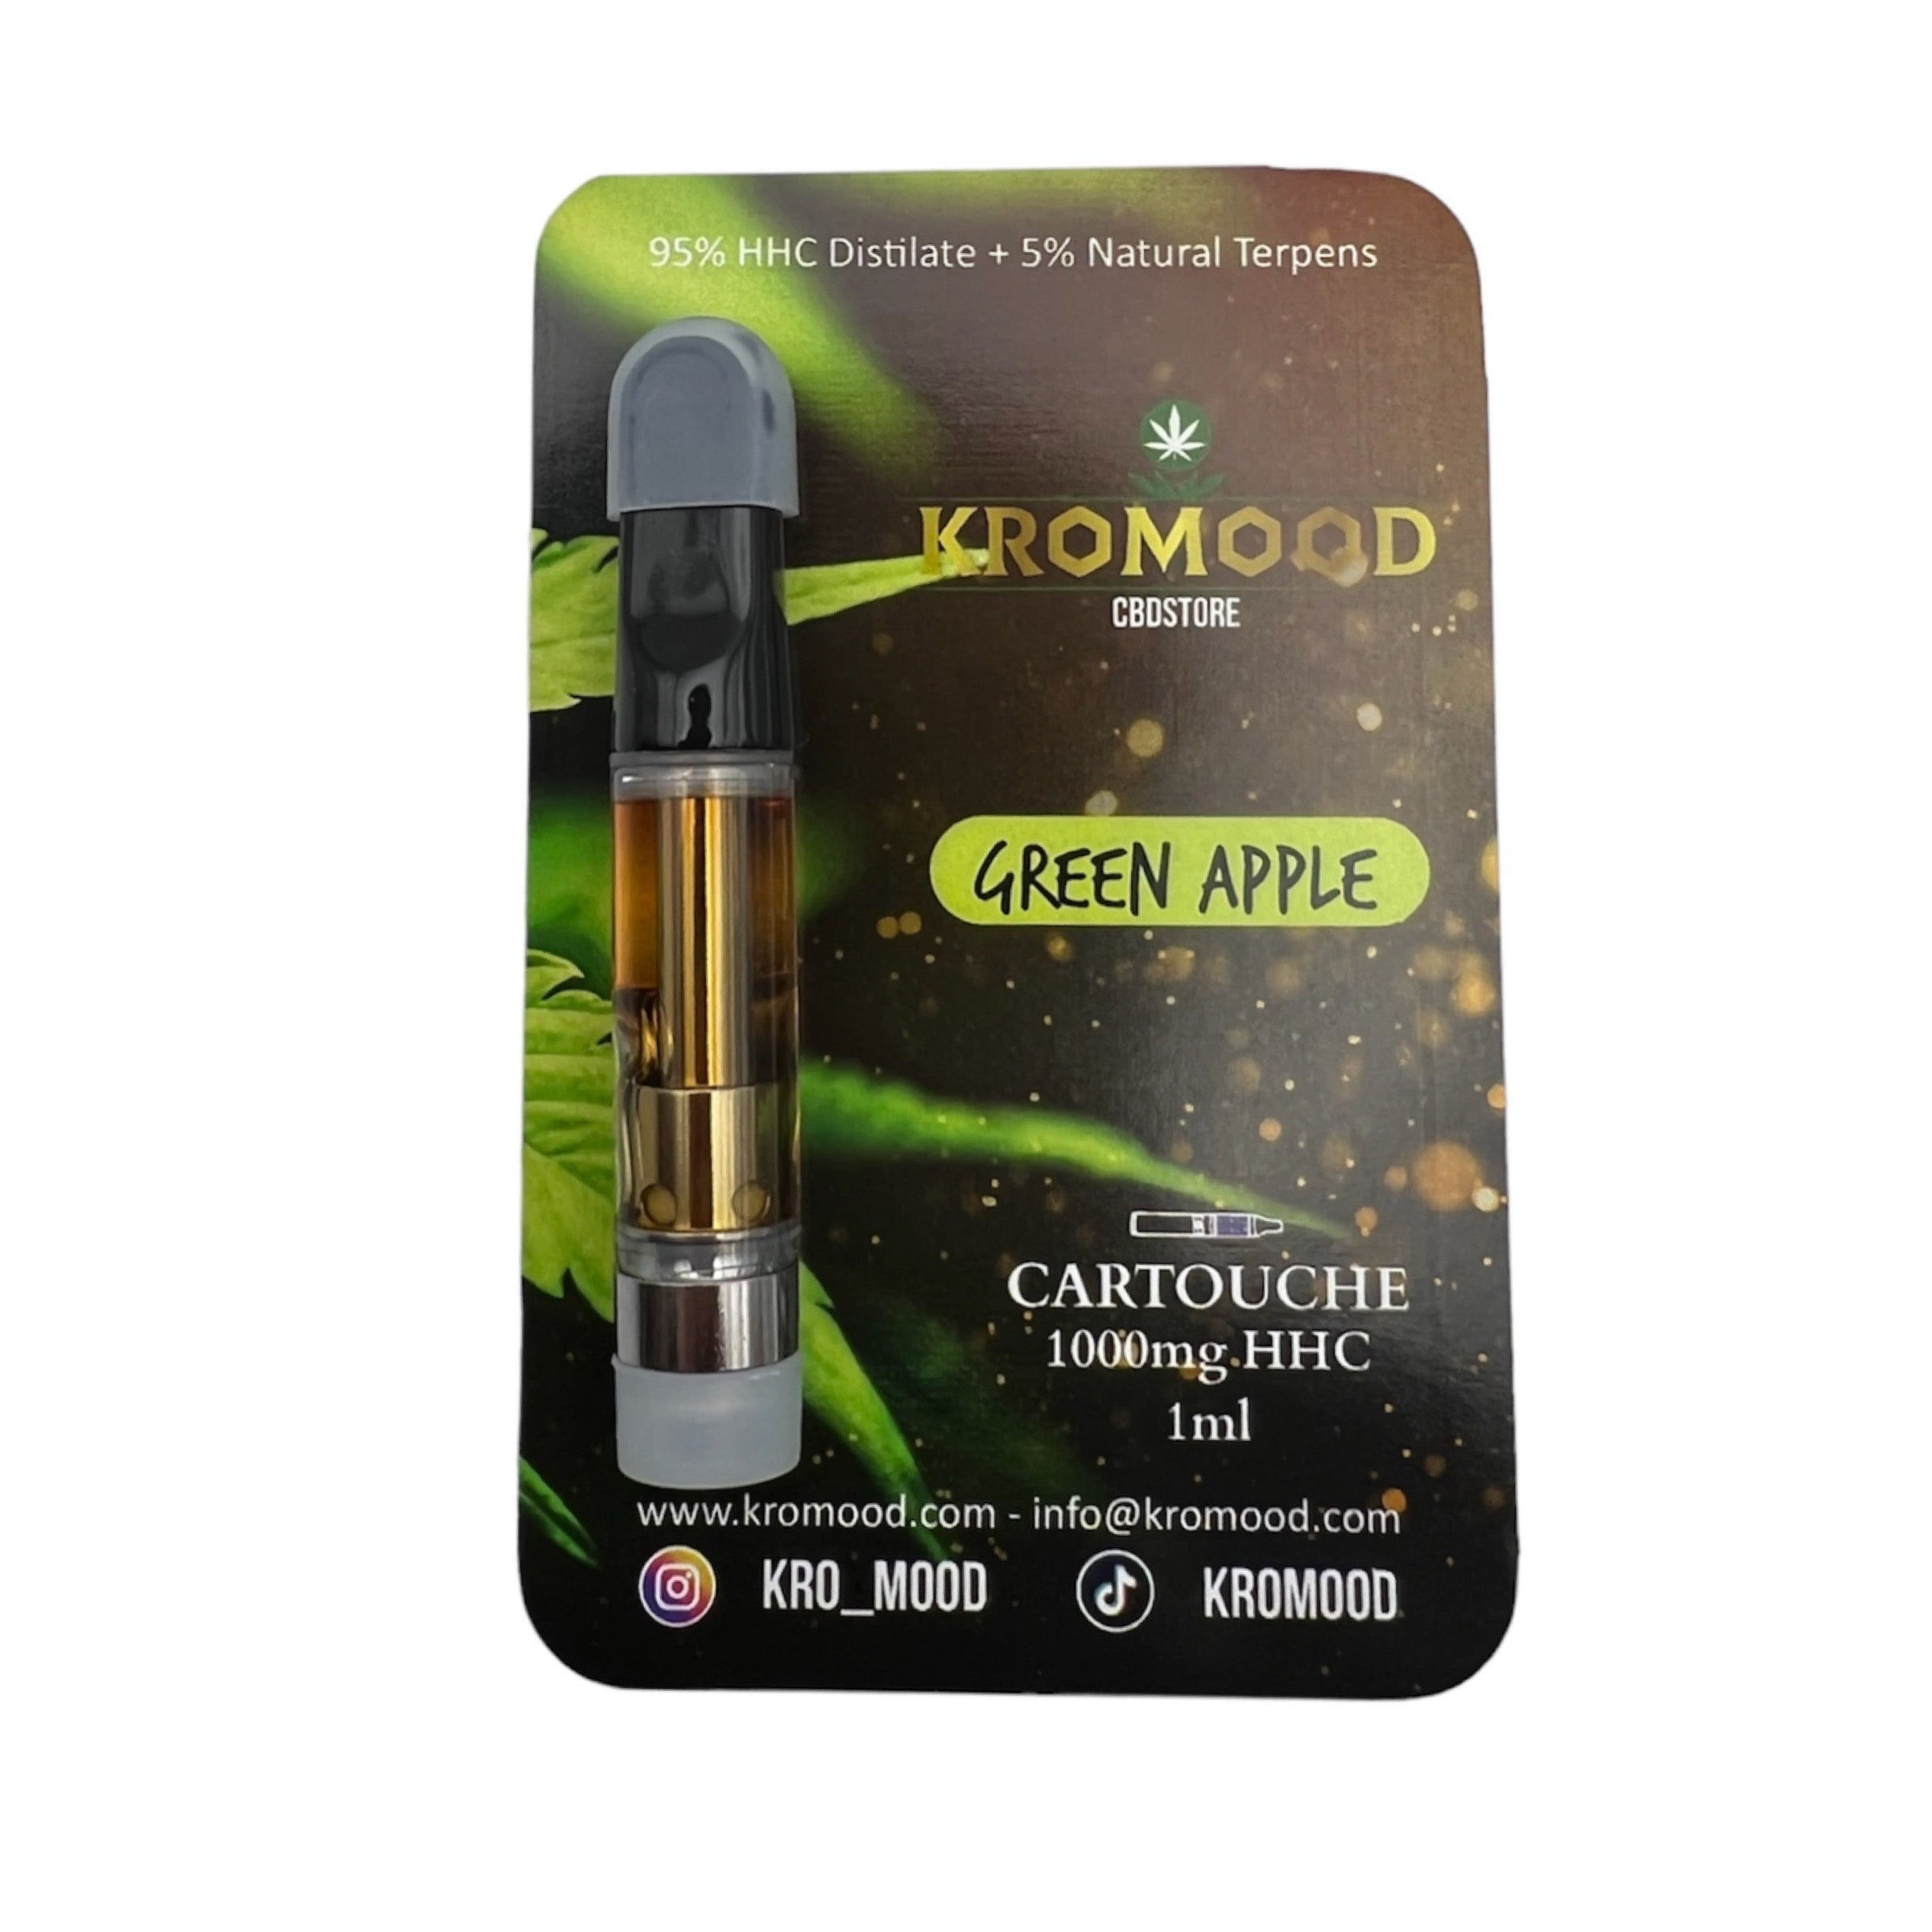 KroMood Cartouche (Dab Pen) de HHC - Green Apple - 95% HHC/1000MG - 600 bouffées